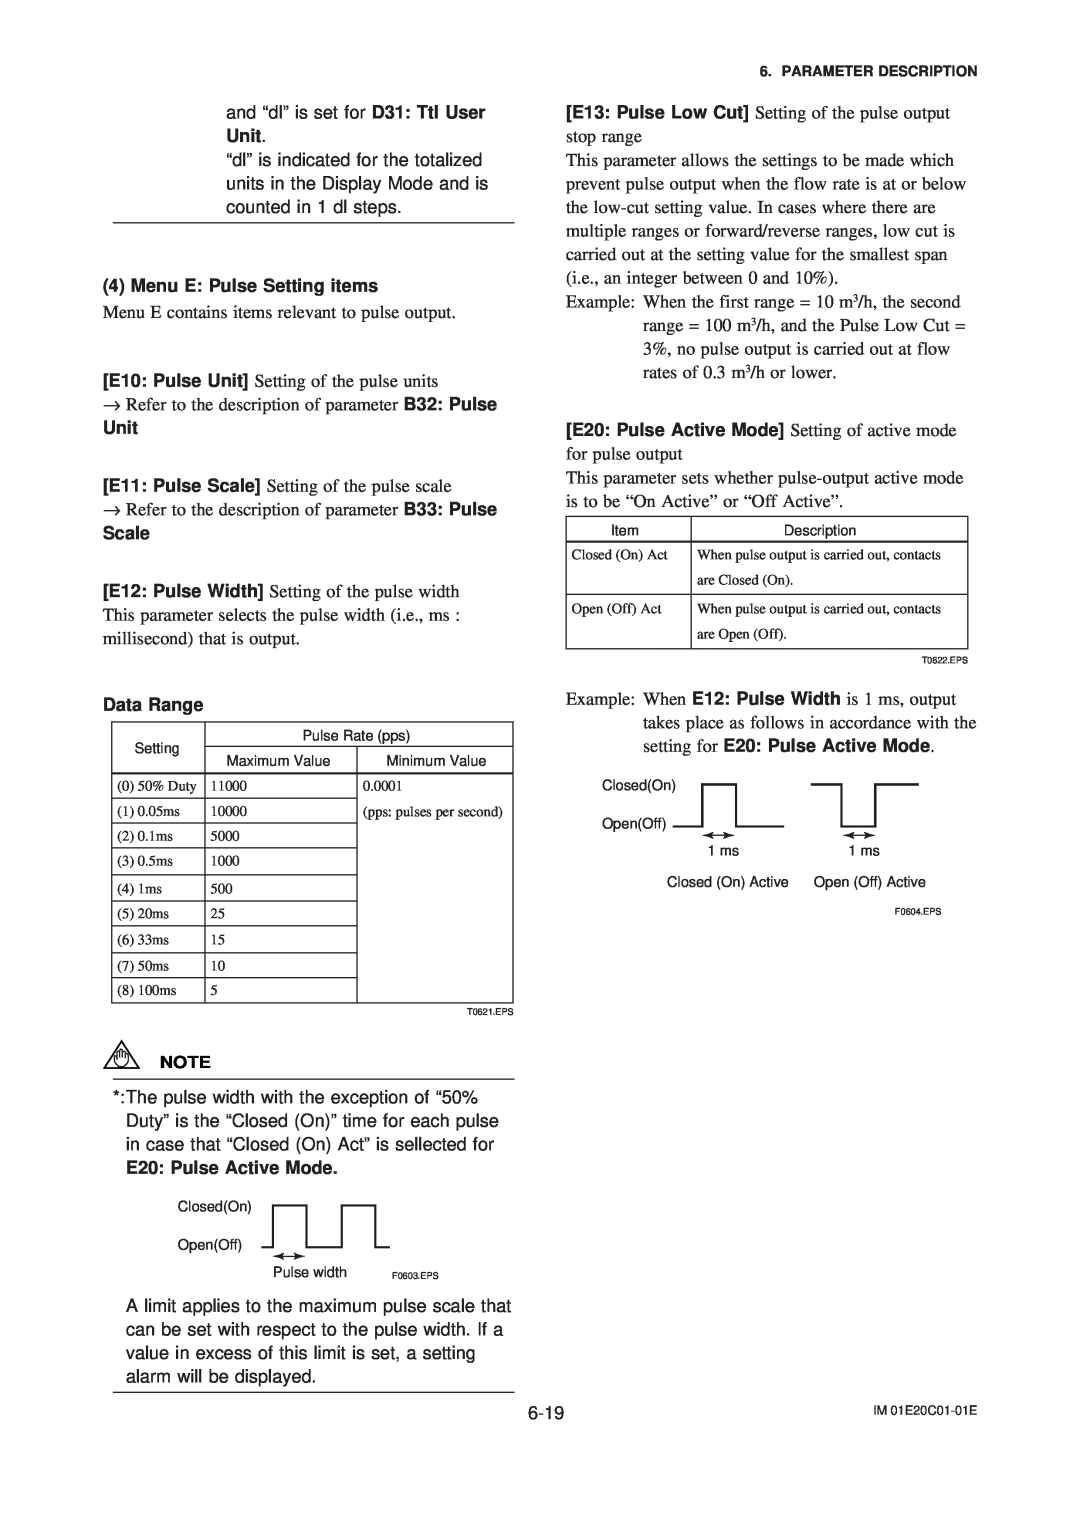 APC AXFA11G user manual Menu E Pulse Setting items, setting for E20 Pulse Active Mode, Unit, Scale, Data Range 